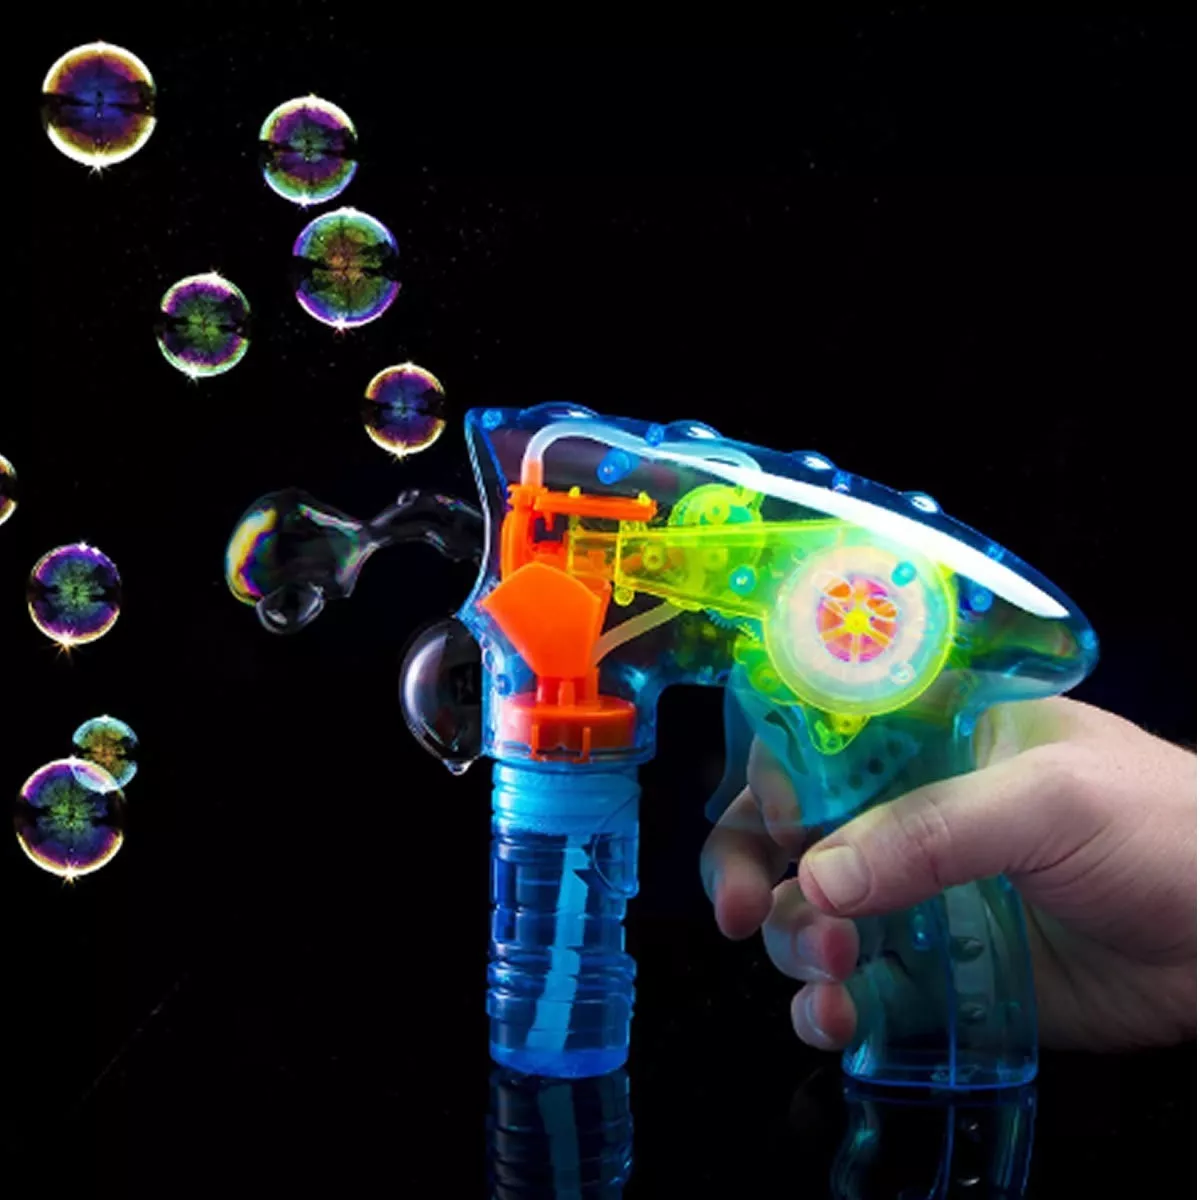 Primera imagen para búsqueda de pistola burbujas